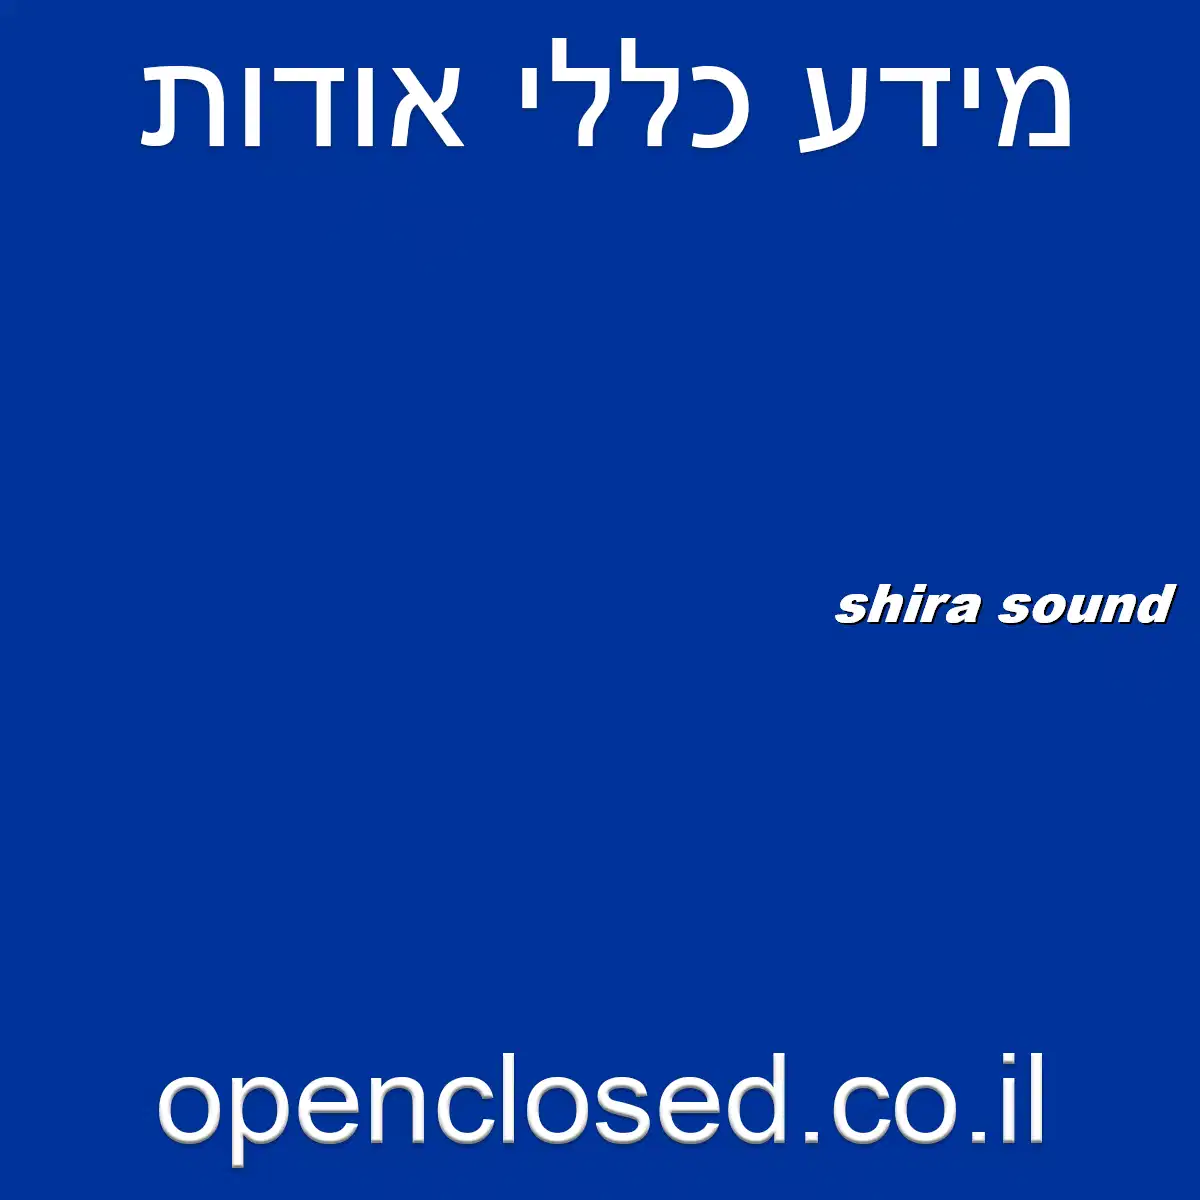 shira sound